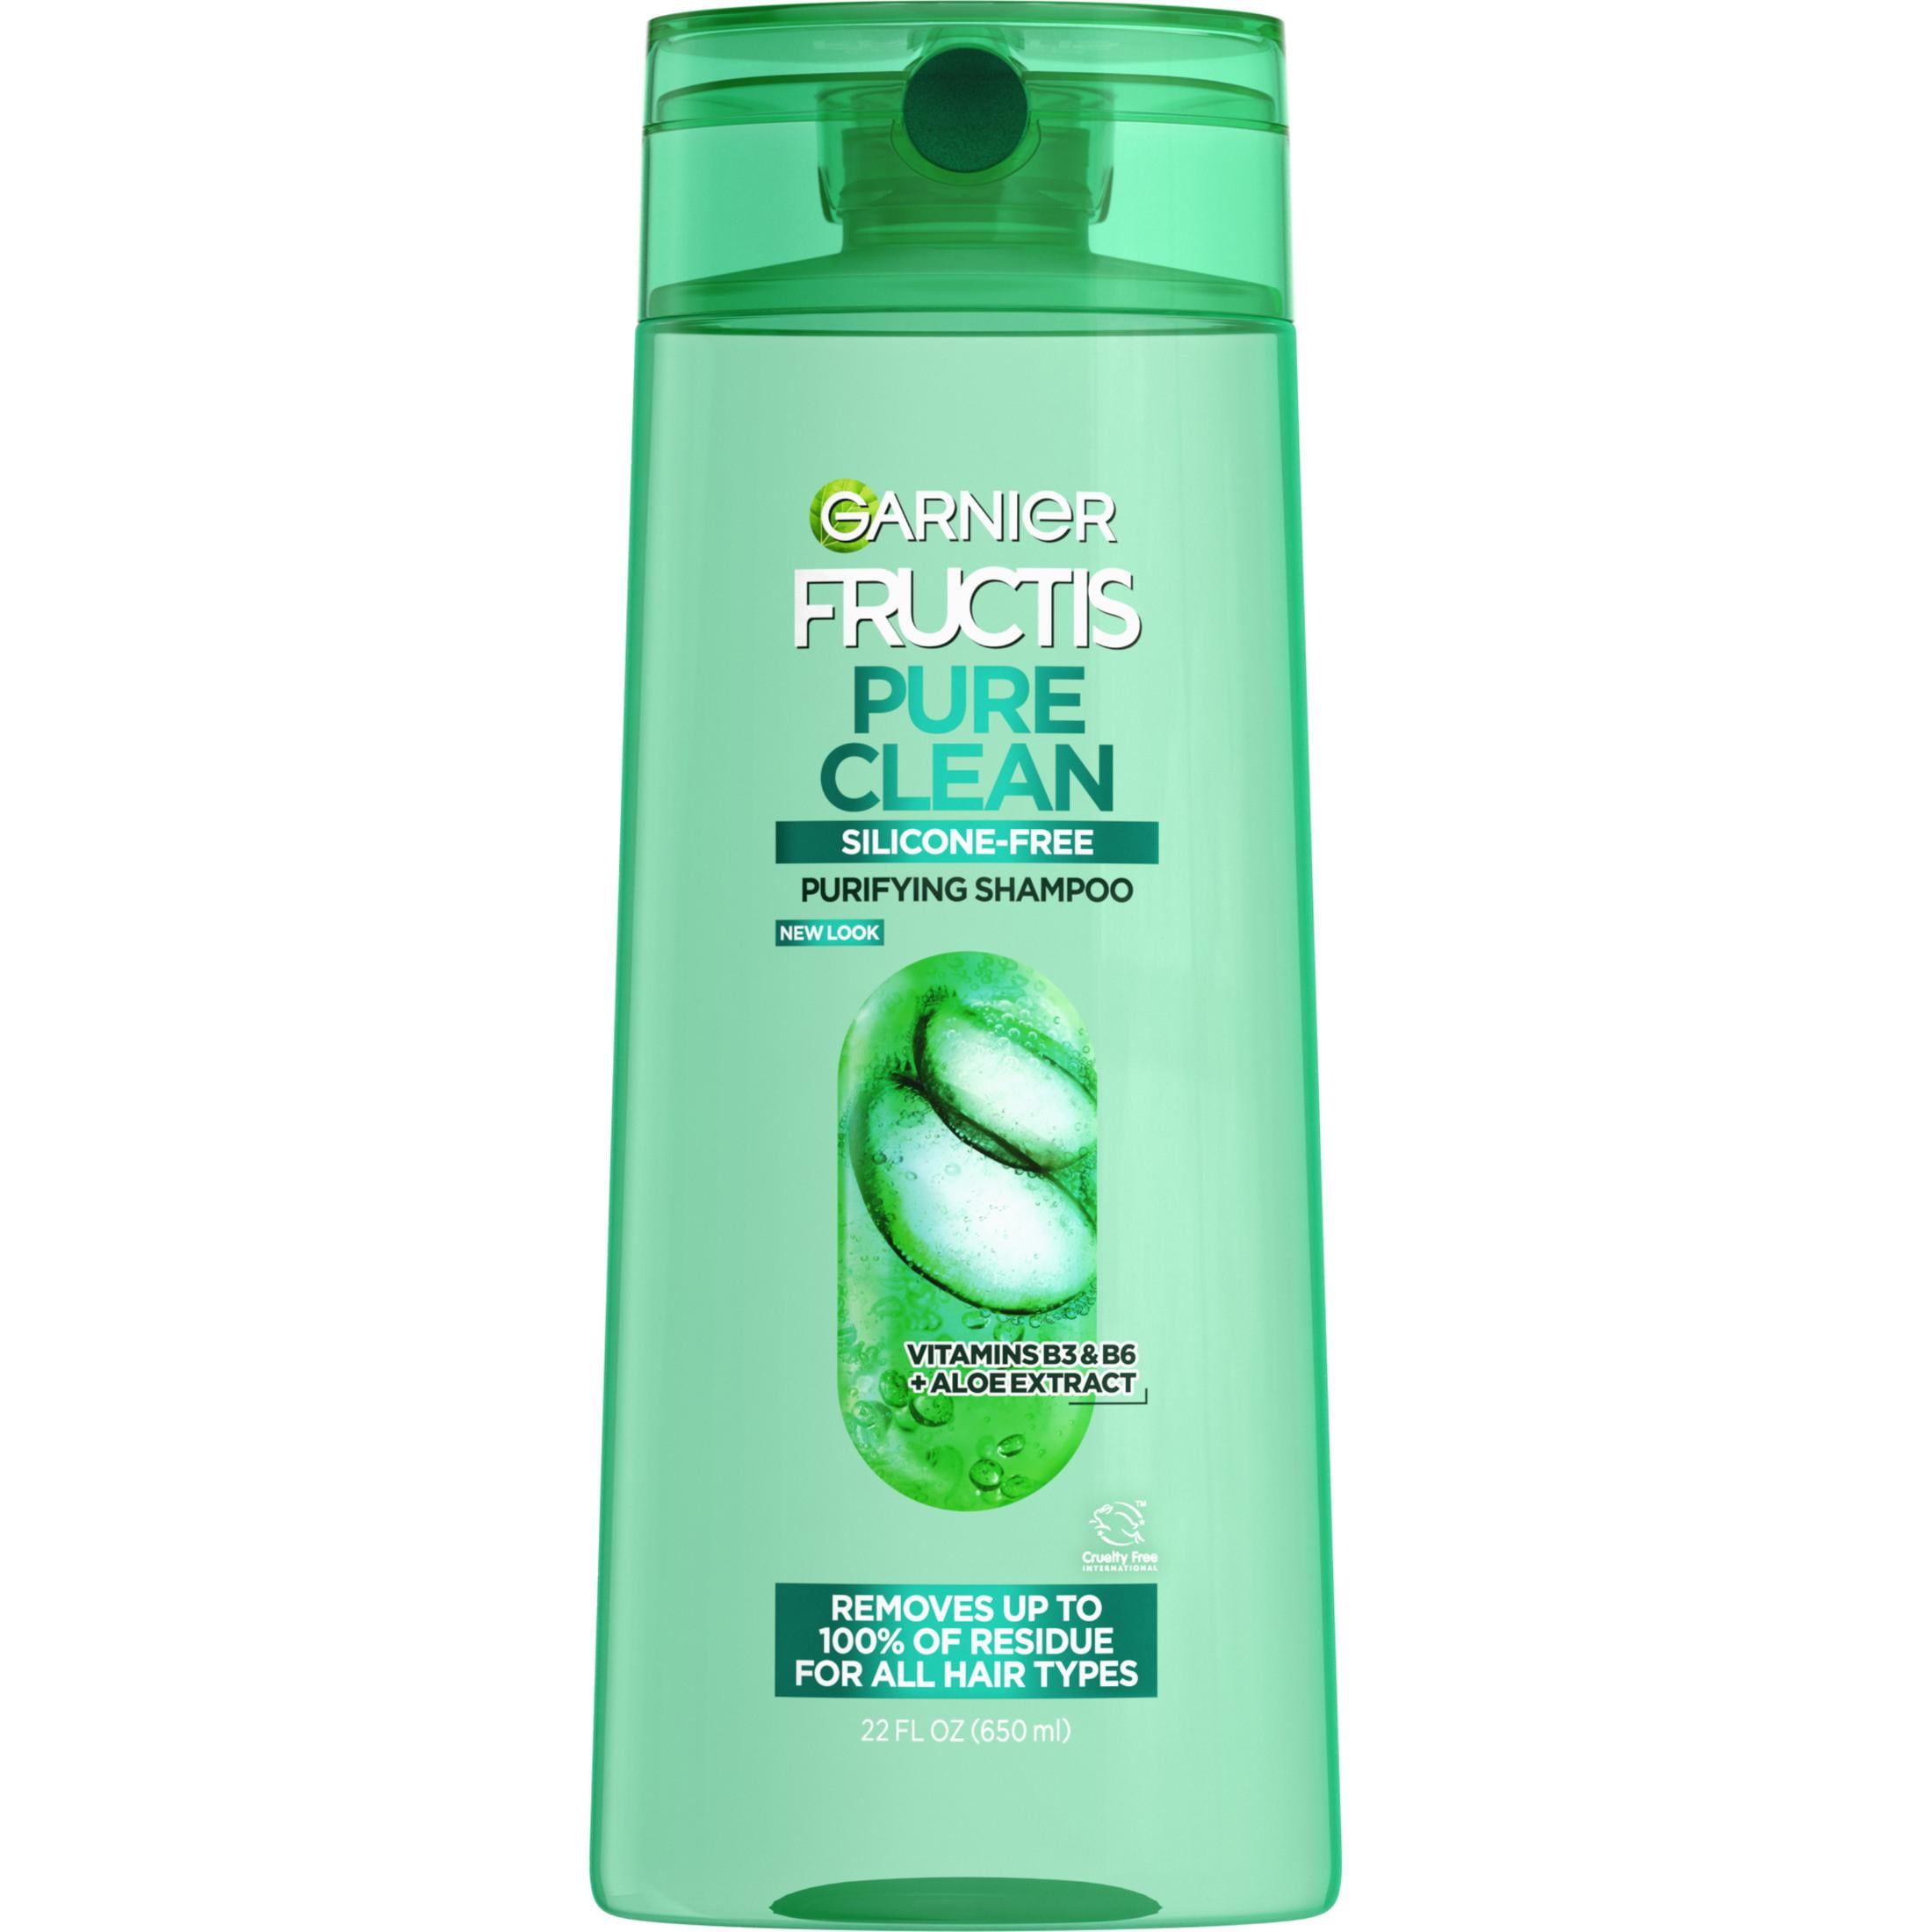 Garnier Fructis Pure Clean Purifying Shampoo, for All Hair Types, 22 fl oz